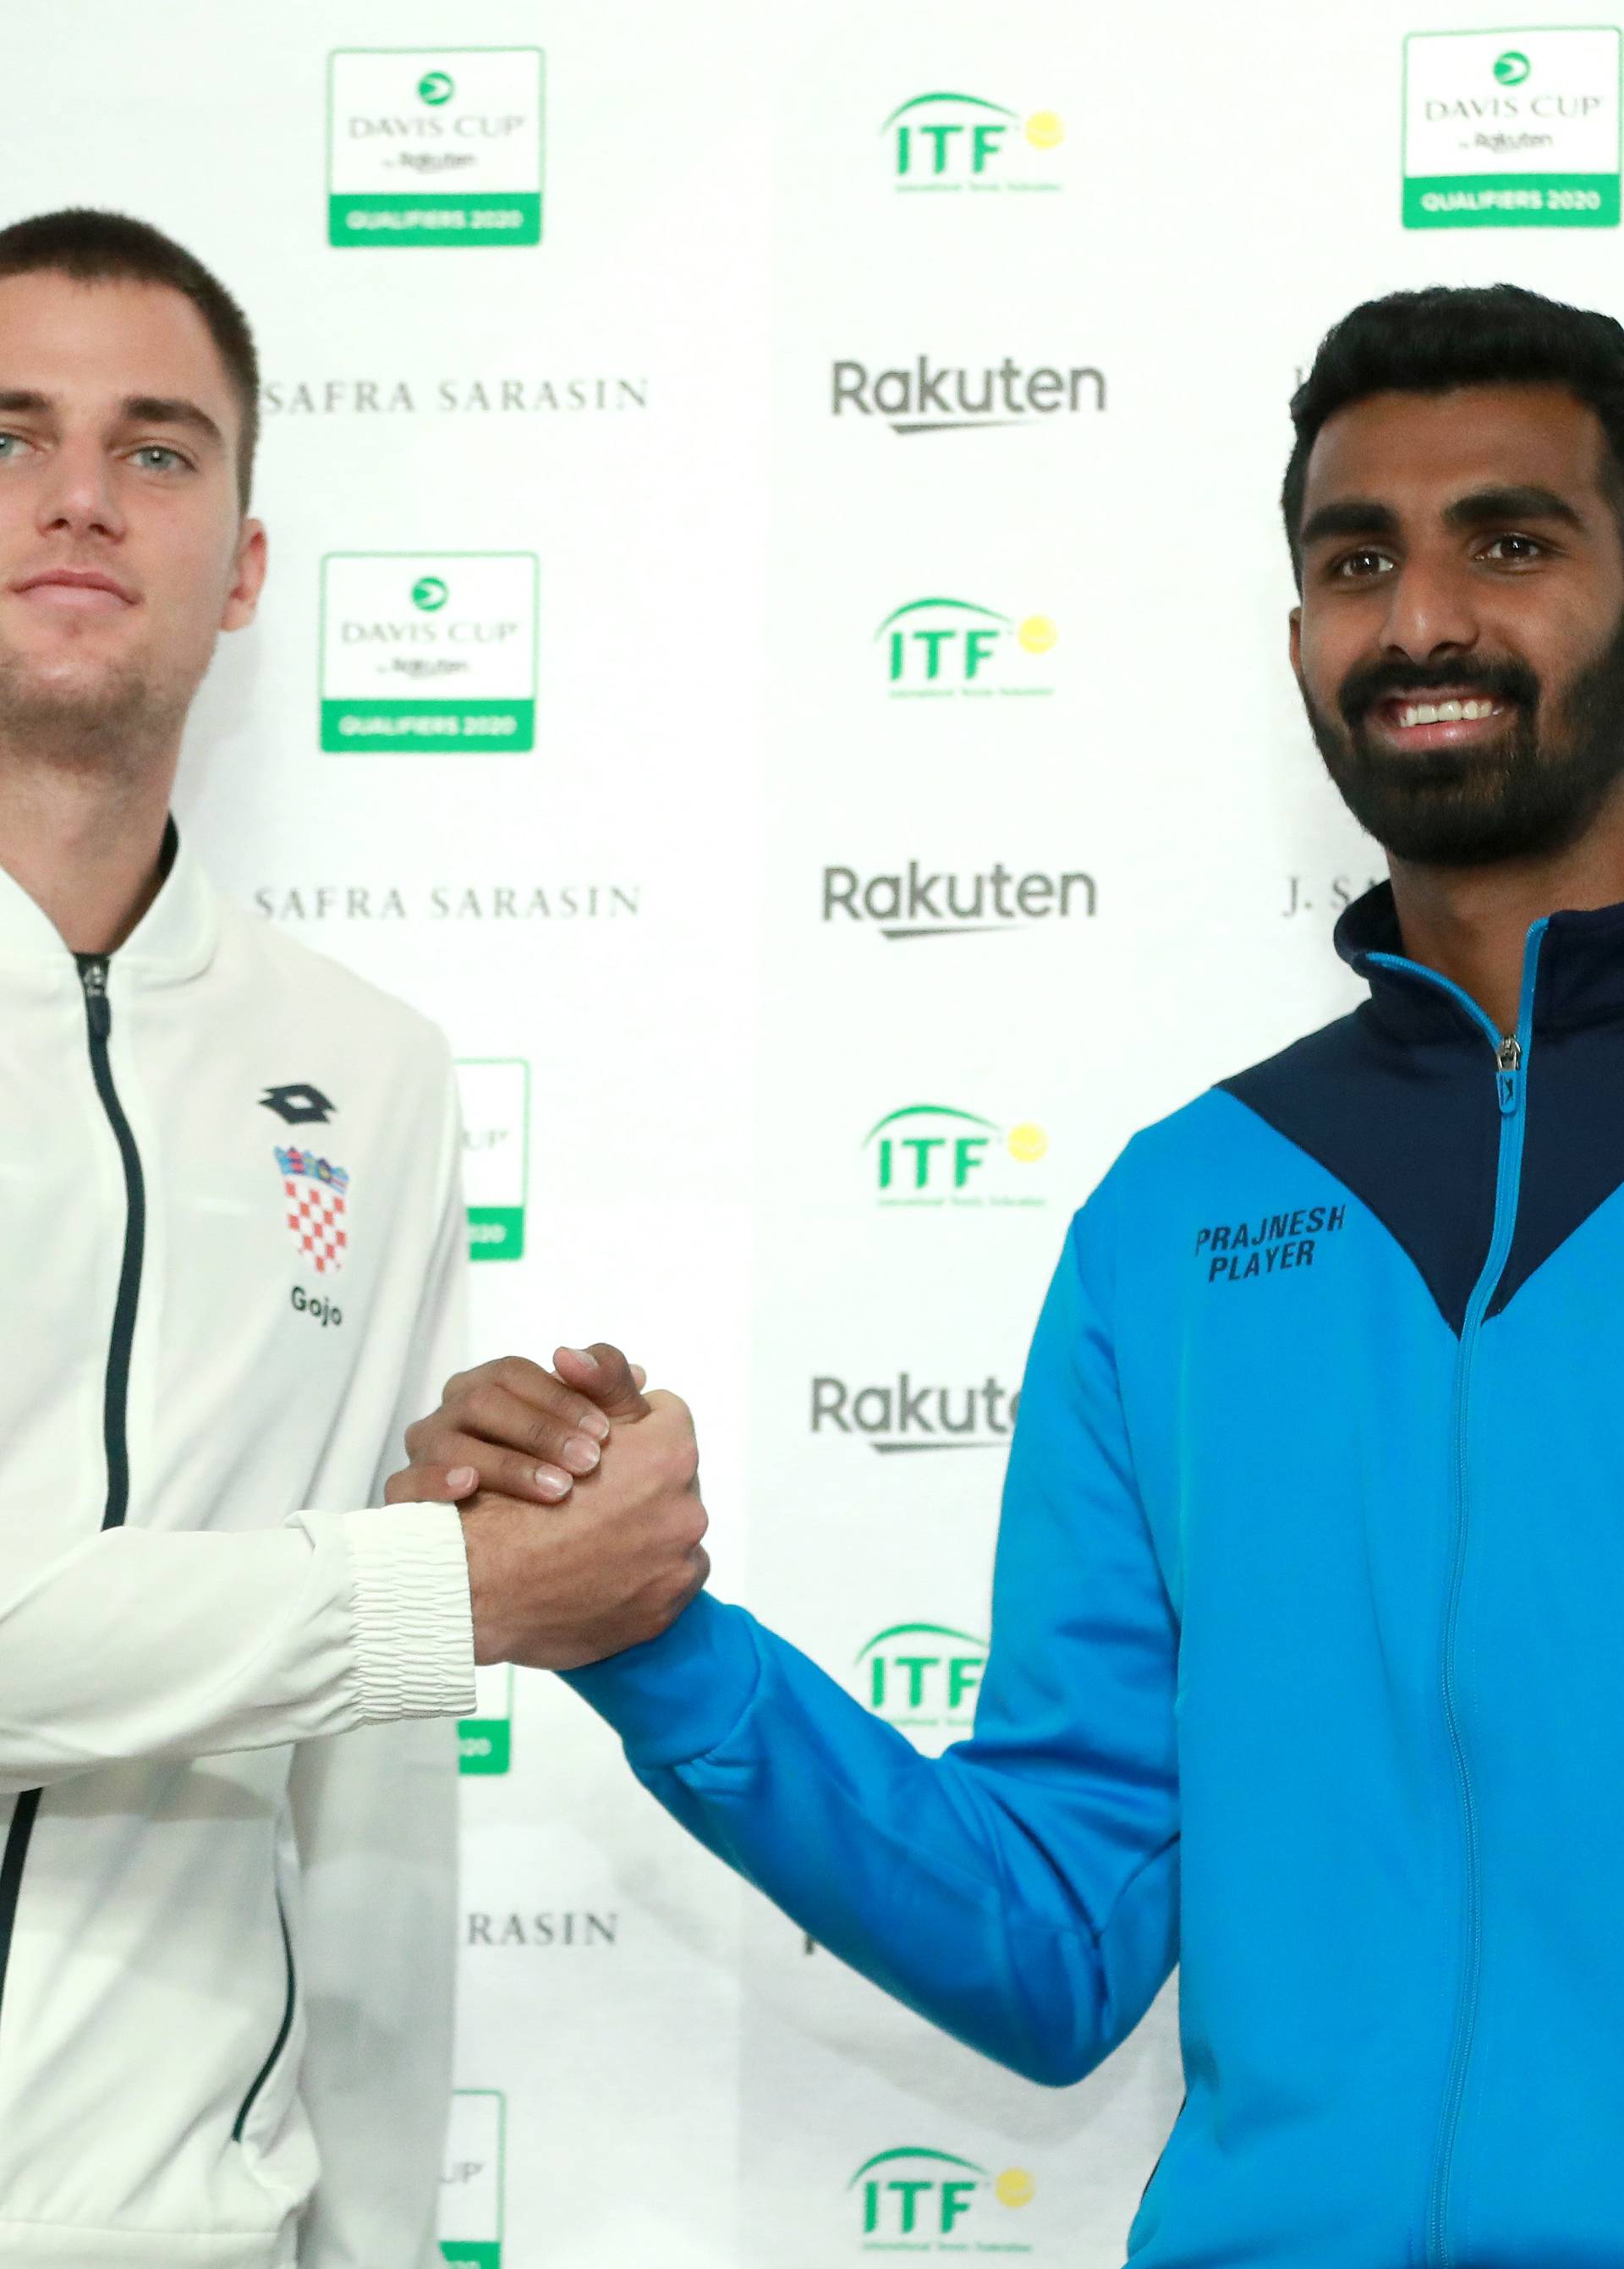 Zagreb: Izvlačanje parova susreta između Hrvatske i Indije u Davisovom kupu